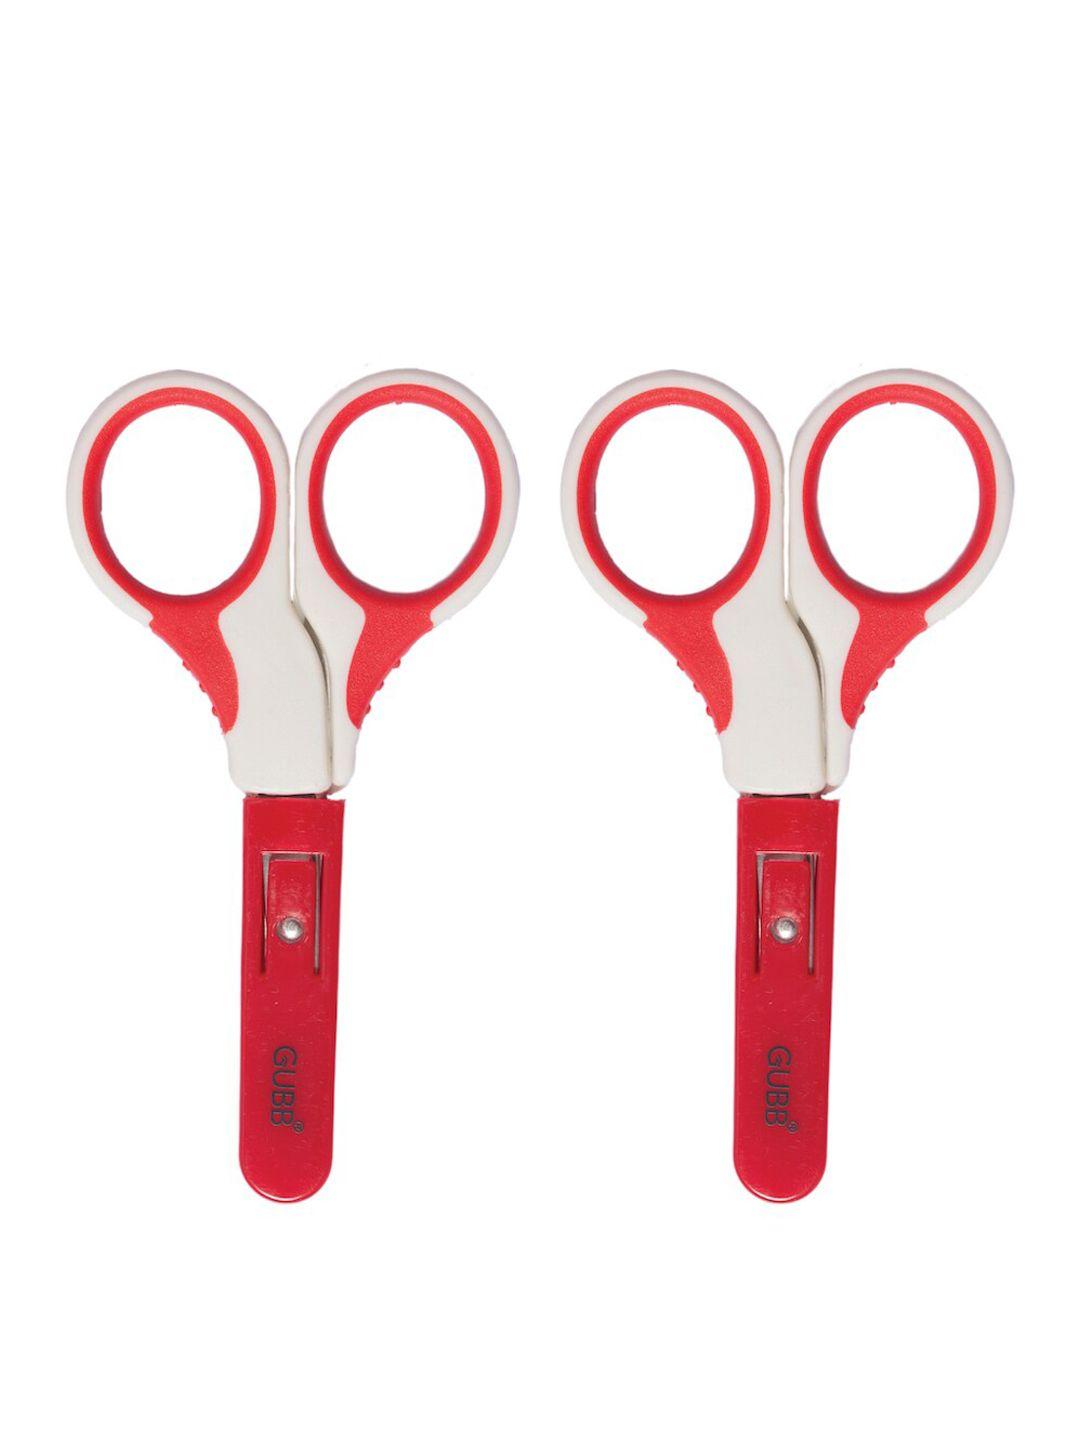 gubb set of 2 convenient portable & compact safety scissors